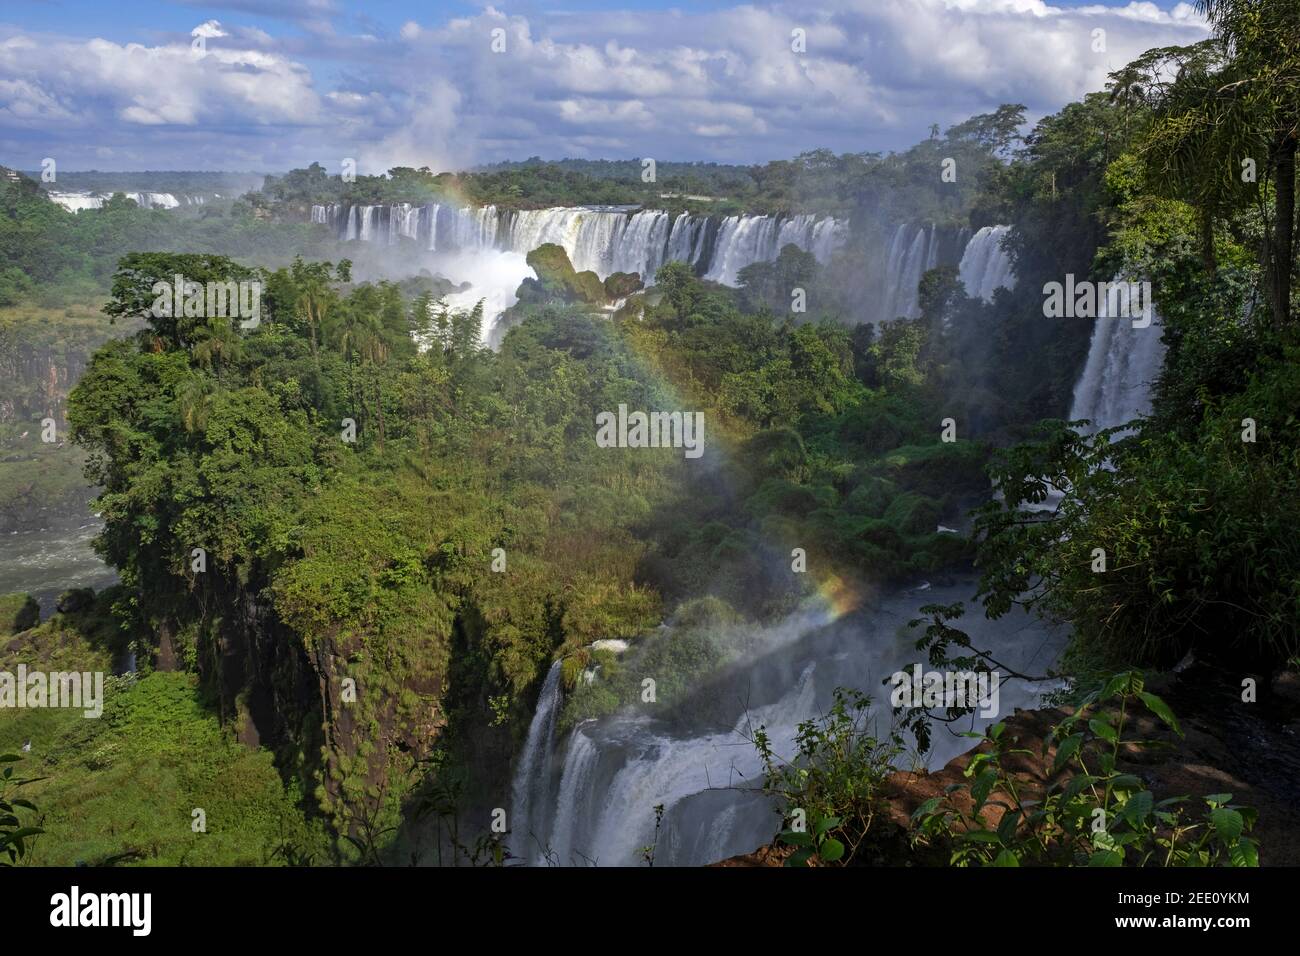 Chutes d'Iguazú / chutes d'Iguaçu, chutes d'eau de la rivière Iguazu à la frontière de la province Argentine de Misiones et de l'état brésilien de Paraná Banque D'Images